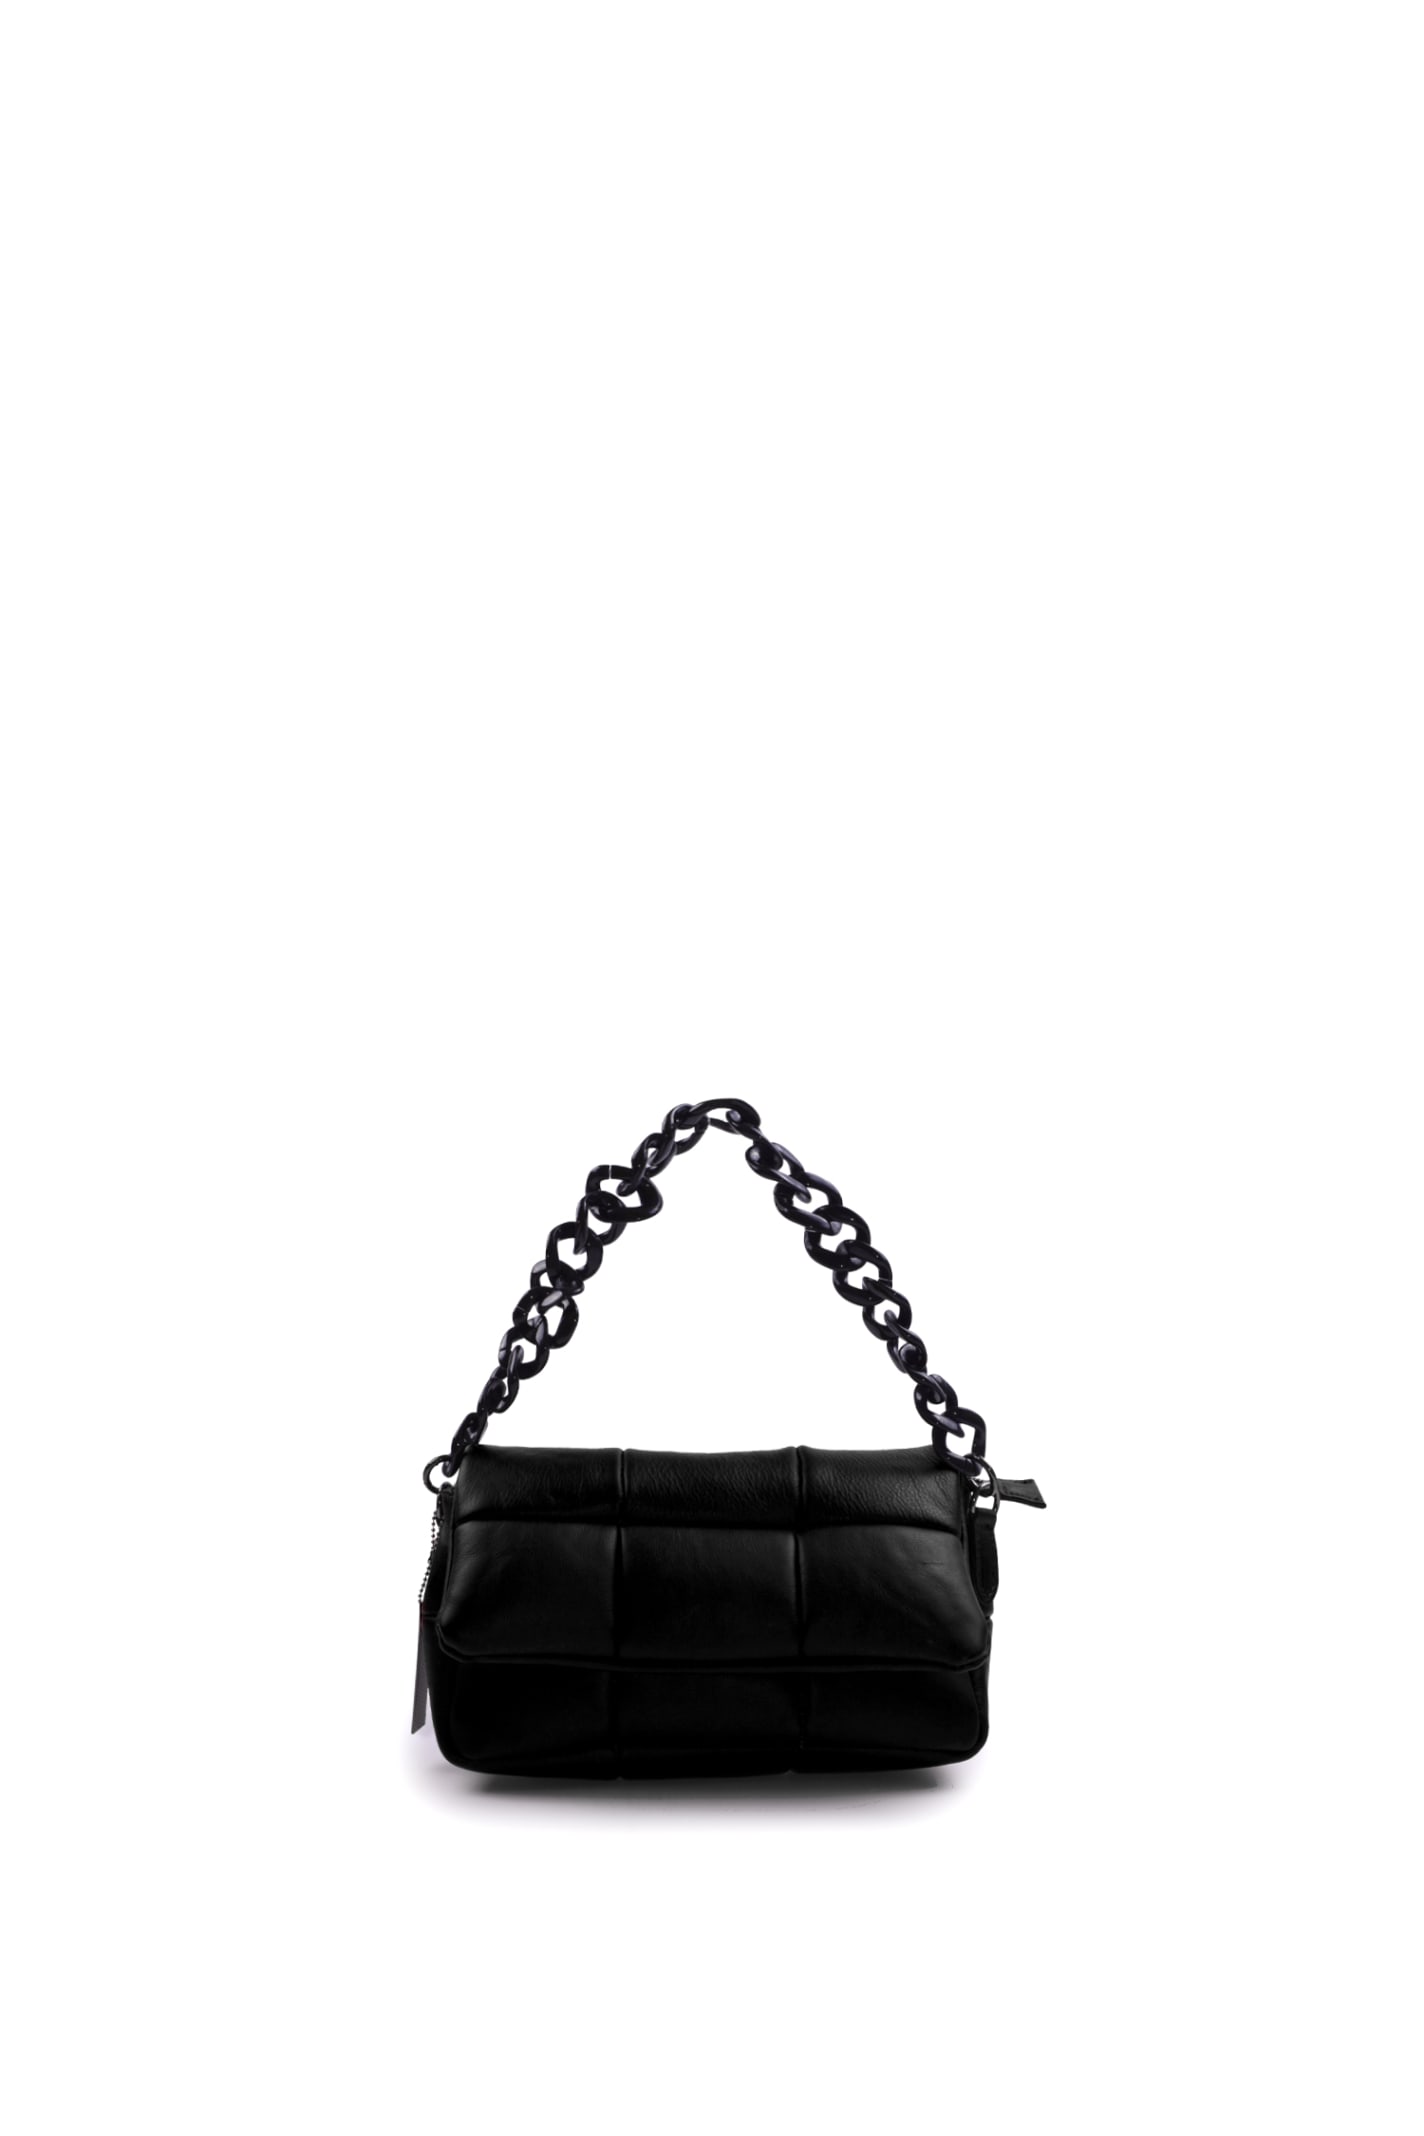 Almala Napoli Leather Bag In Black